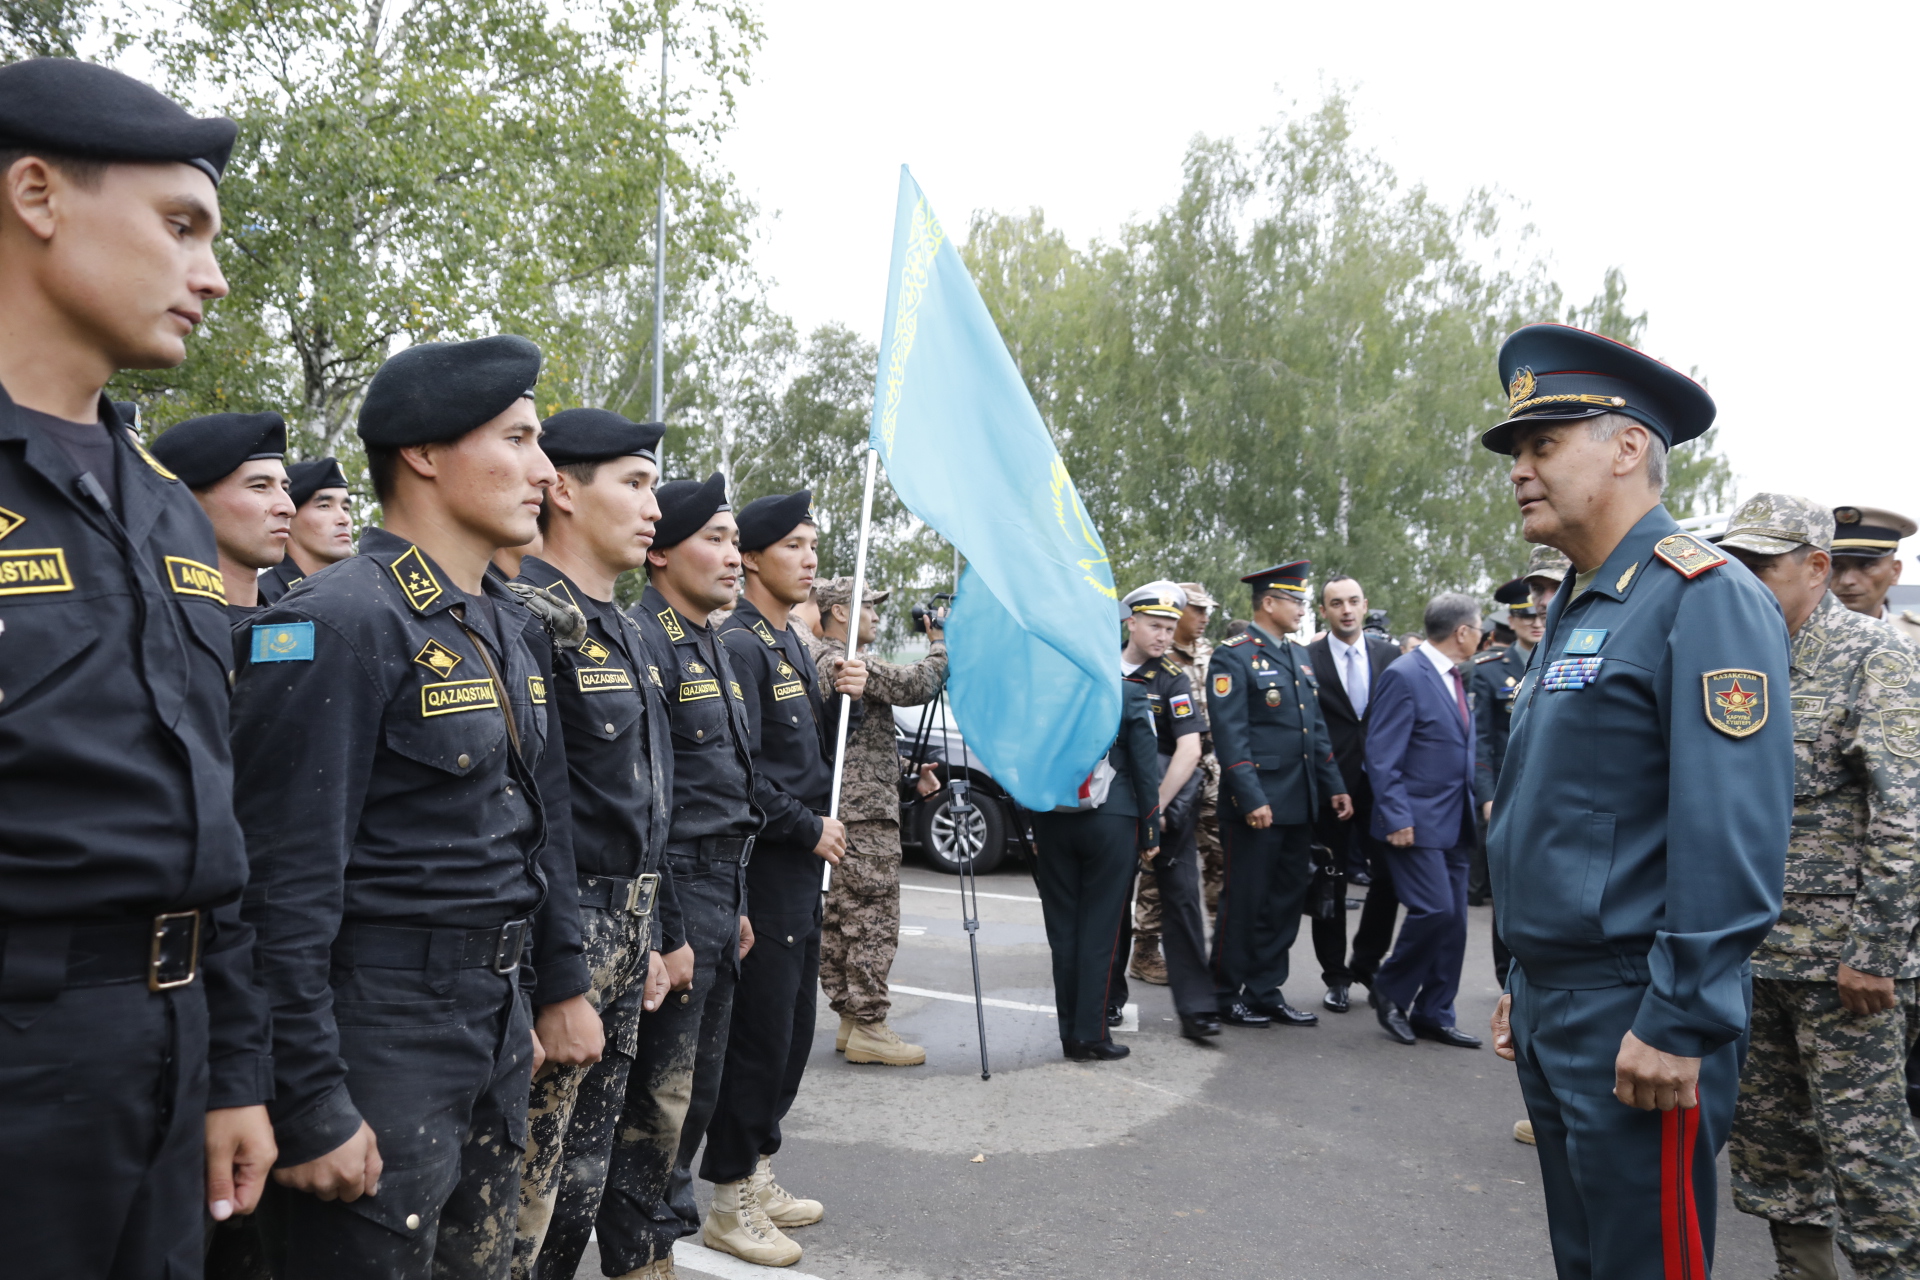 V Армейские международные игры: сборная Казахстана награждена в общекомандном зачете 